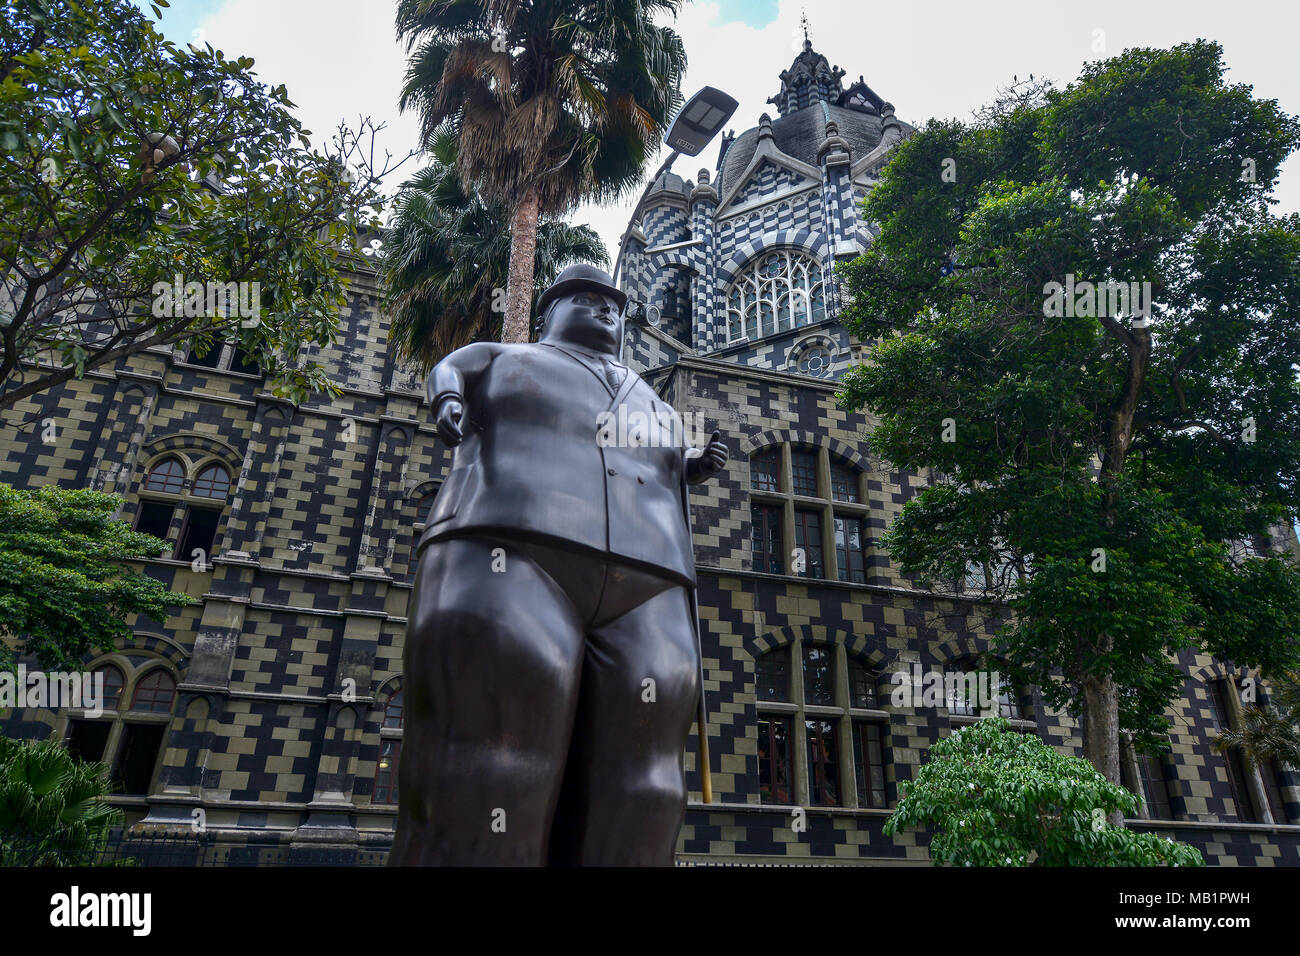 Medellin, Kolumbien - 31. Juli 2017: Skulptur des Künstlers und Bildhauers Fernando Botero in Plaza Botero in Medellin, Kolumbien Stockfoto